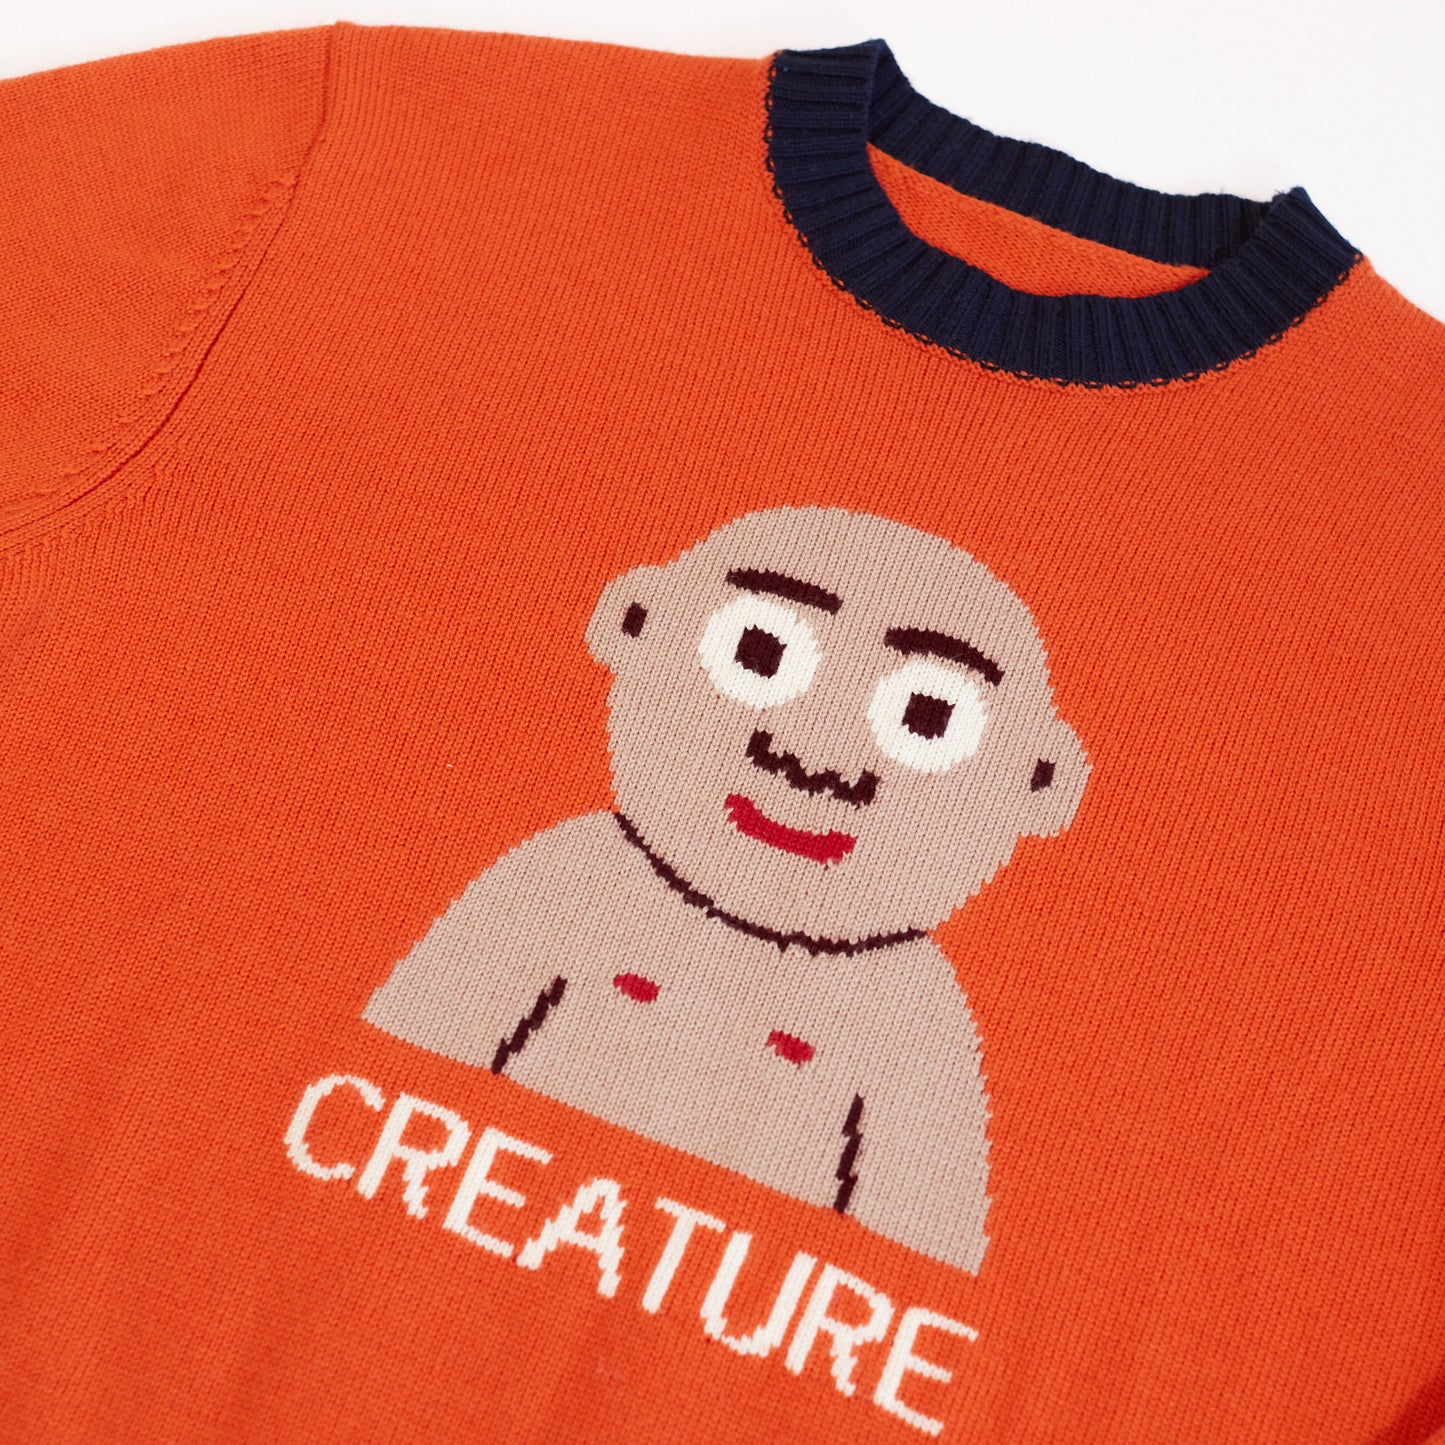 Orange "Creature" Sweater